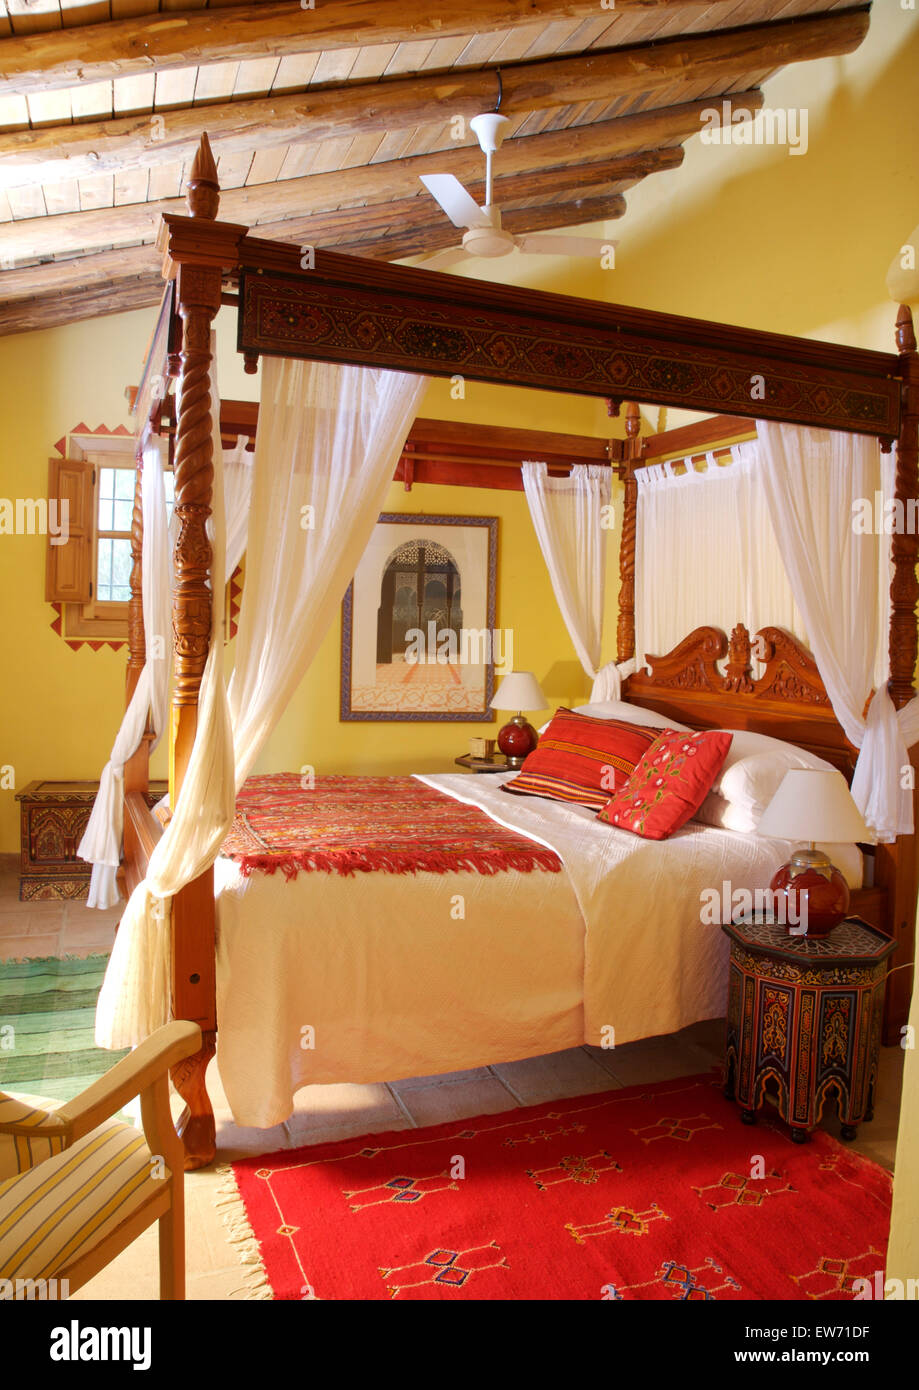 Coussins et tapis rouge ethnique sur lit à baldaquin en bois rustique avec  des rideaux blancs en jaune l'espagnol chambre pays Photo Stock - Alamy